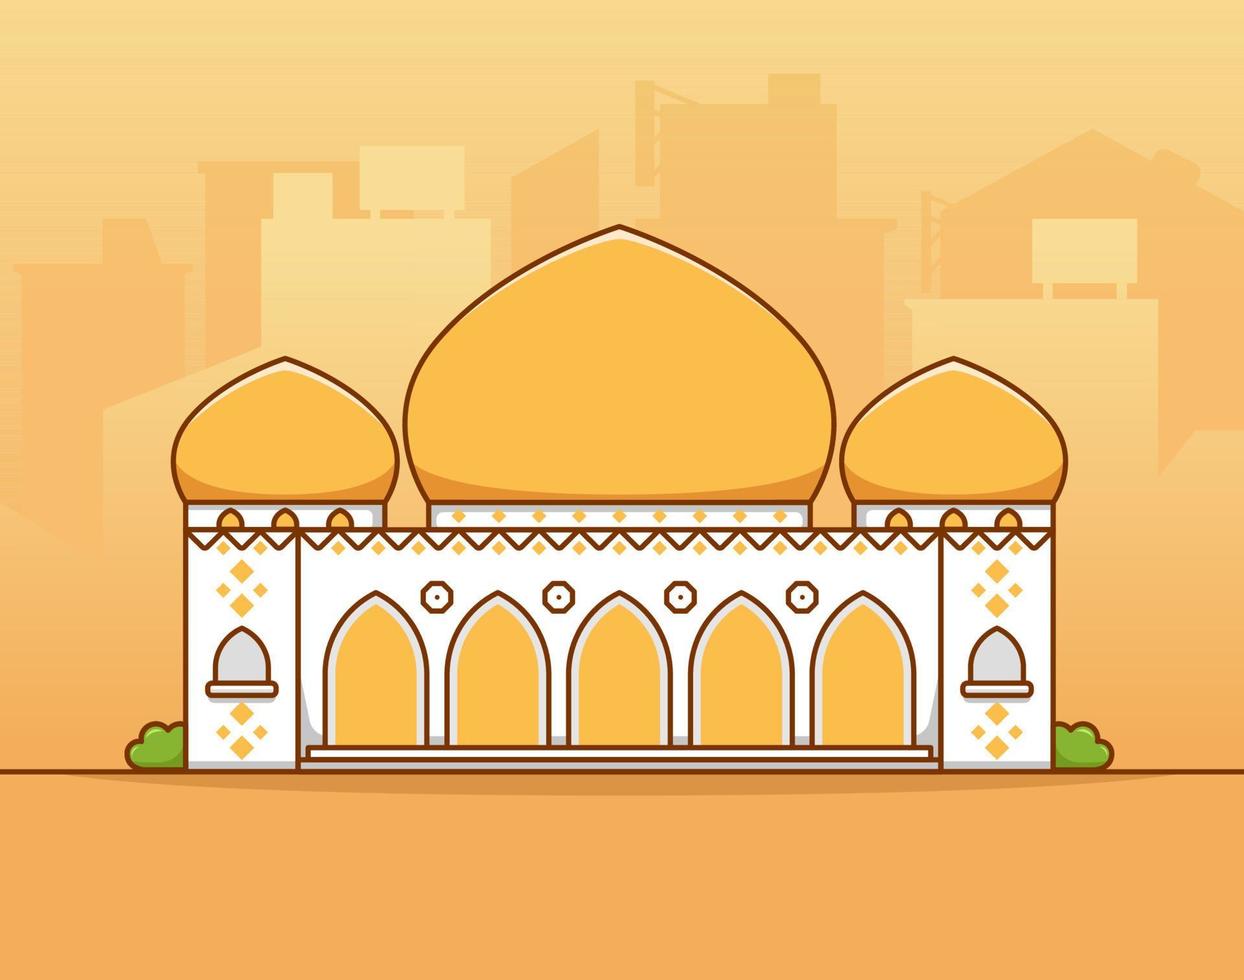 grande grande mosquée musulmane islamique avec dôme jaune or au milieu de la ville silhouette illustration vectorielle plane vecteur